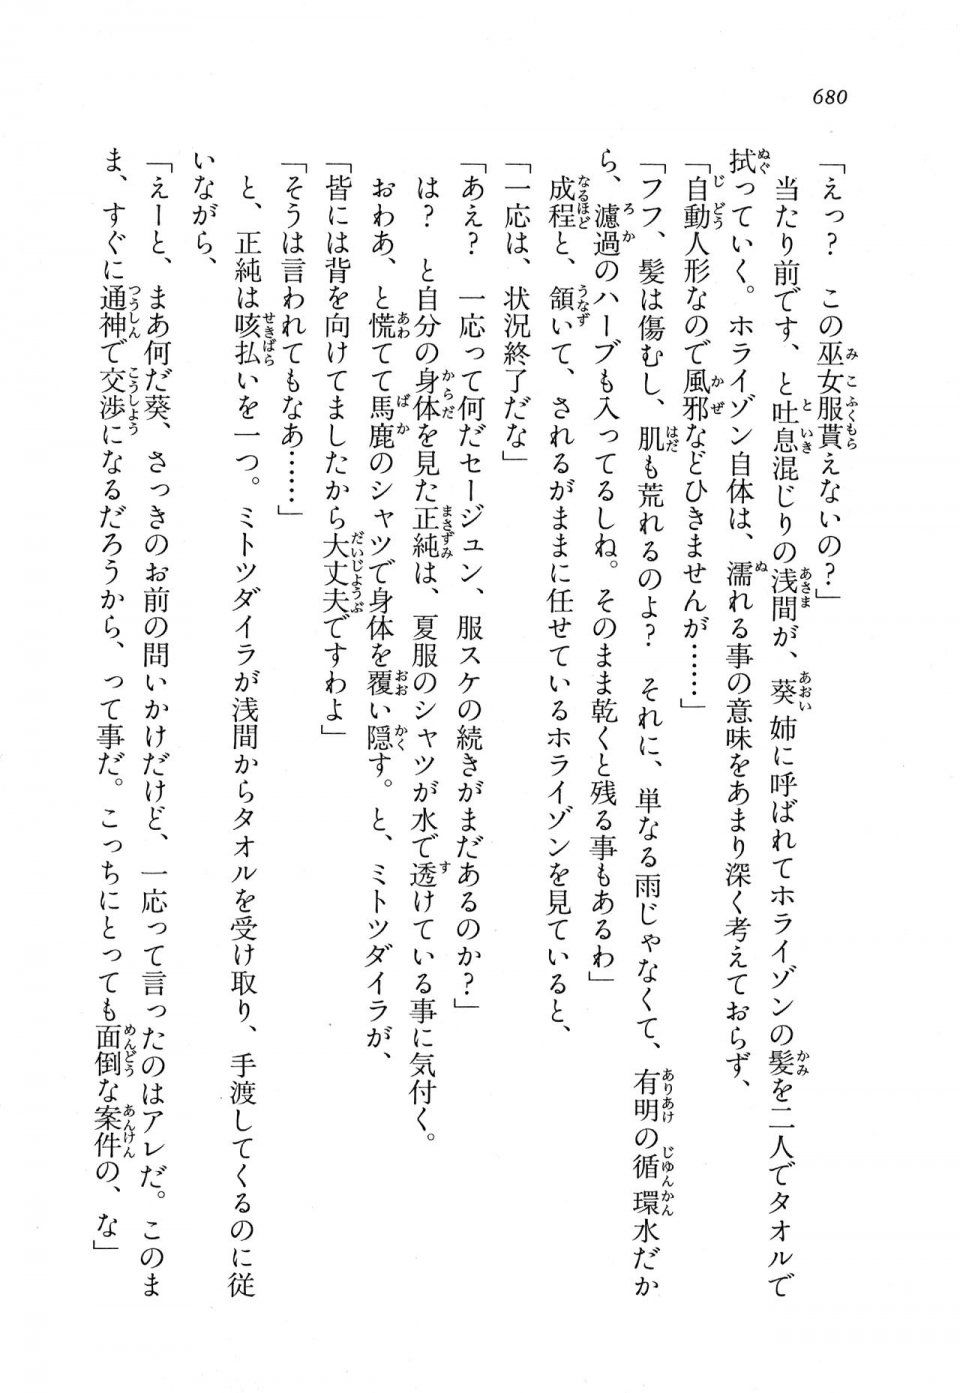 Kyoukai Senjou no Horizon LN Vol 11(5A) - Photo #680